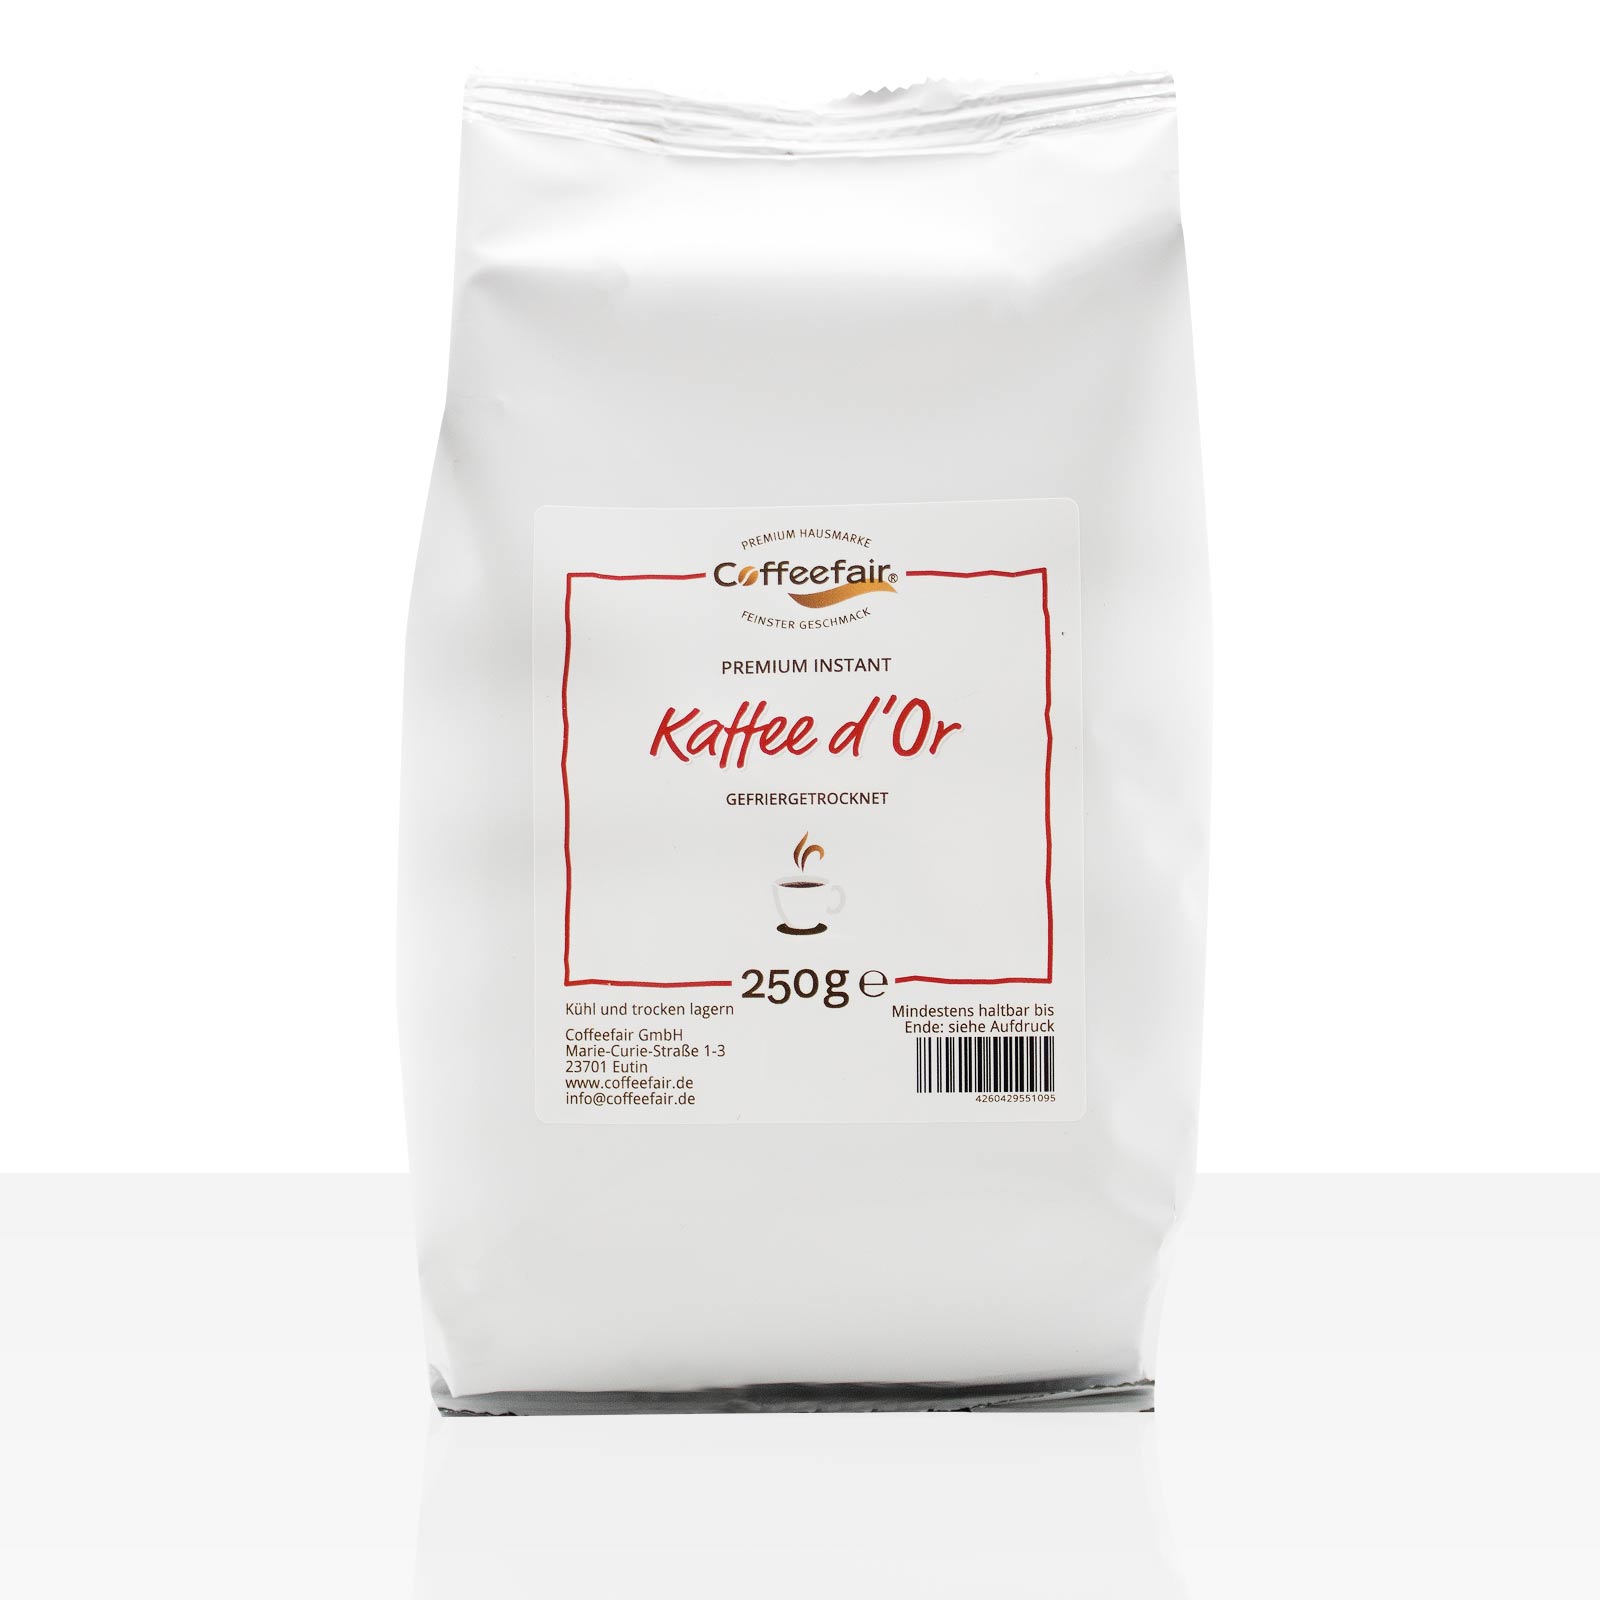 Coffeefair Premium Instant Kaffee d'Or - 10 x 250g löslicher Instantkaffee